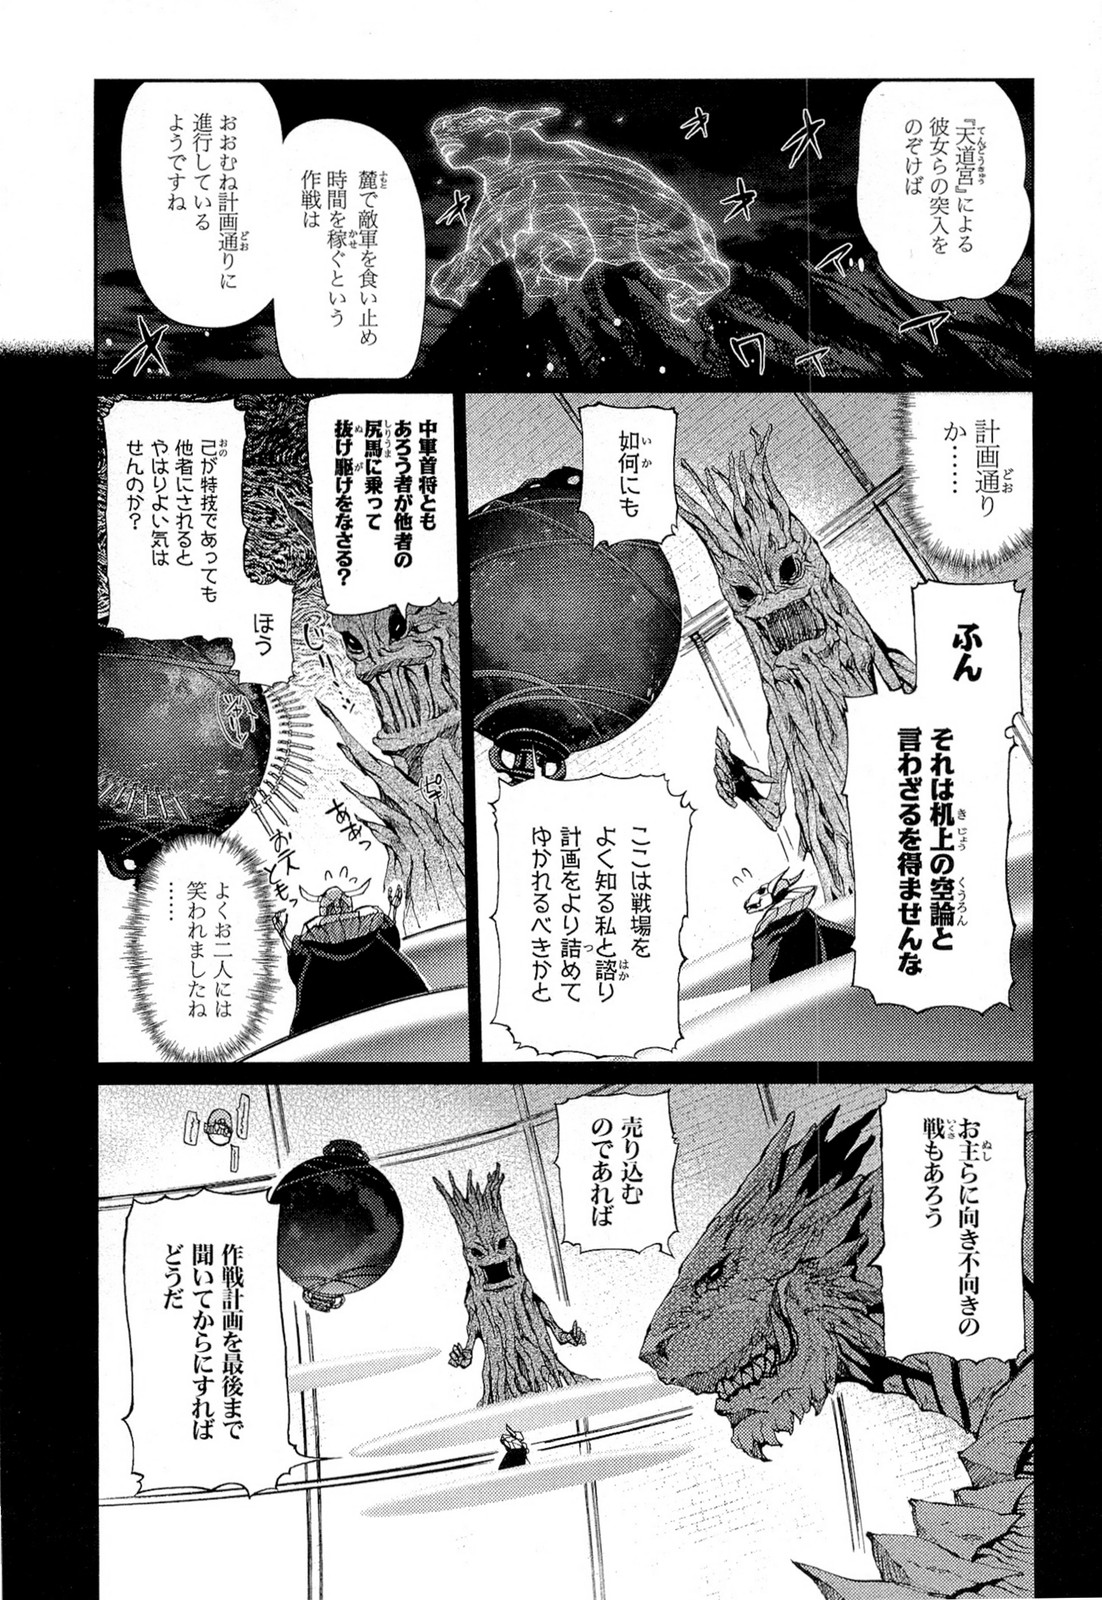 Shakugan no Shana X Eternal Song – Harukanaru Uta - Chapter 16 - Page 2